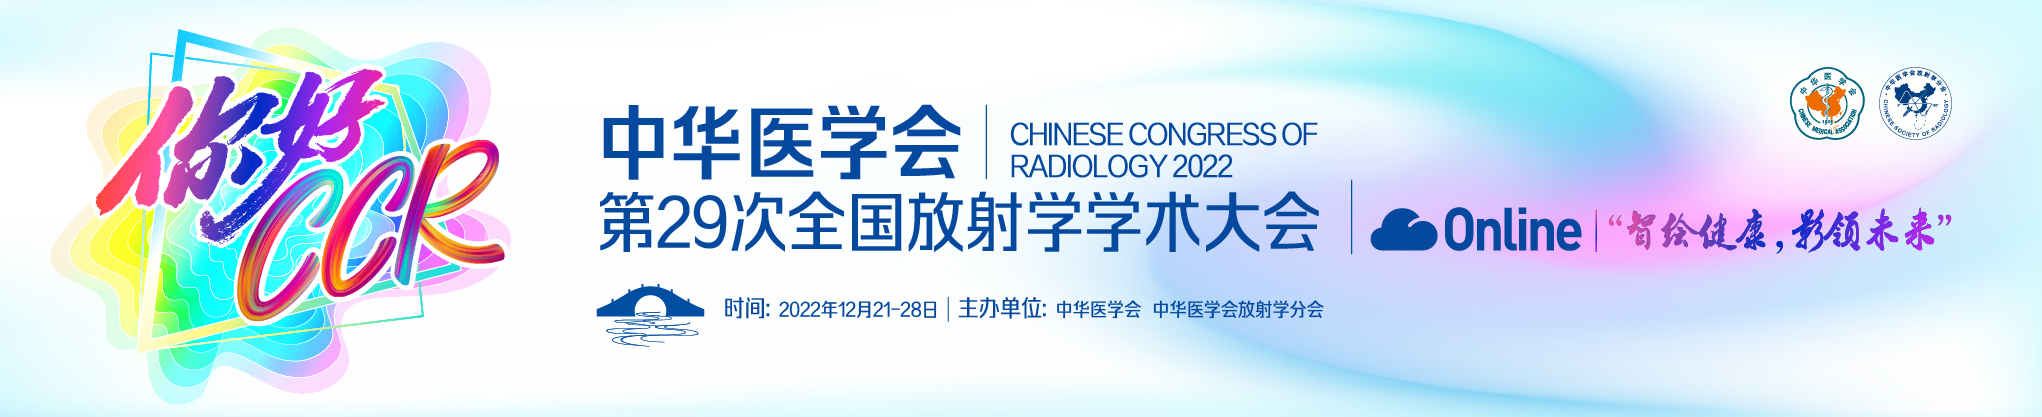 中华医学会第29次全国放射学学术大会(CCR2022 Online）